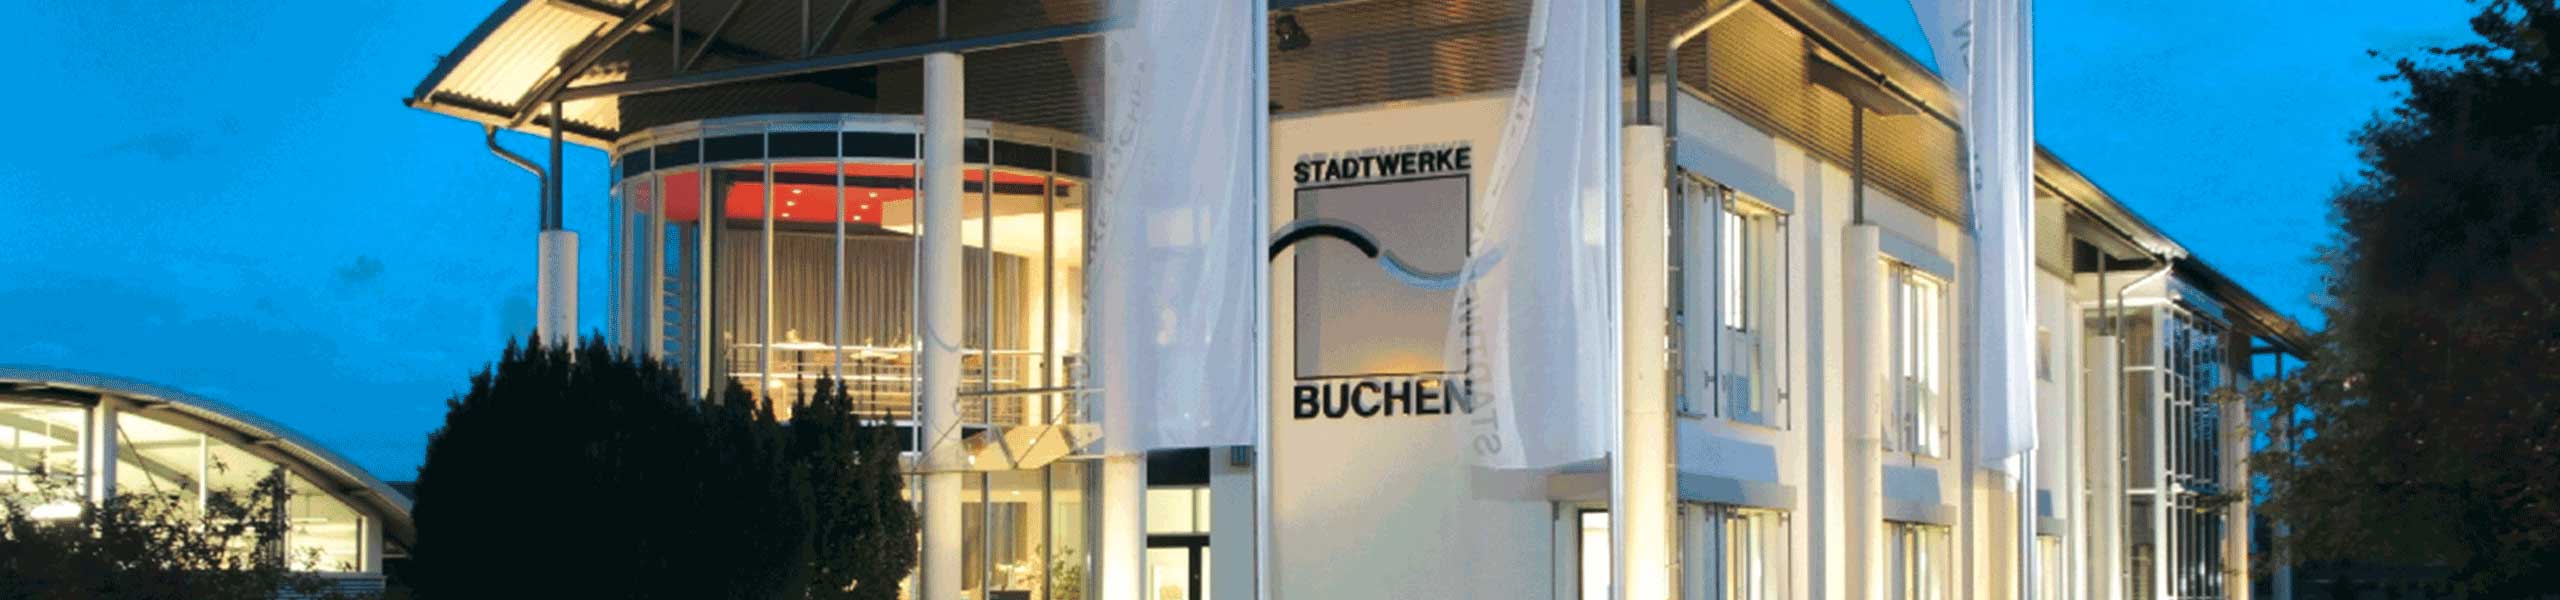 Stadtwerke Buchen GmbH & Co KG - Ihr Versorger vor Ort - Information zur aktuellen Gaspreisentwicklung